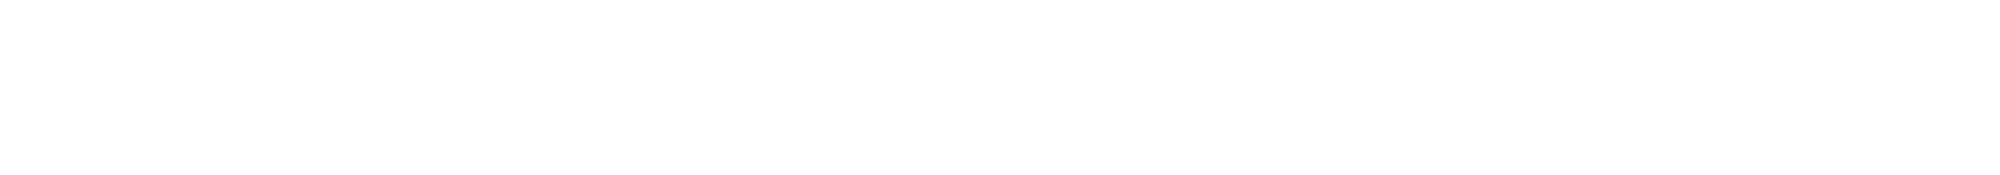 Logo_Peak-of-Travel-Schriftzug-weiss